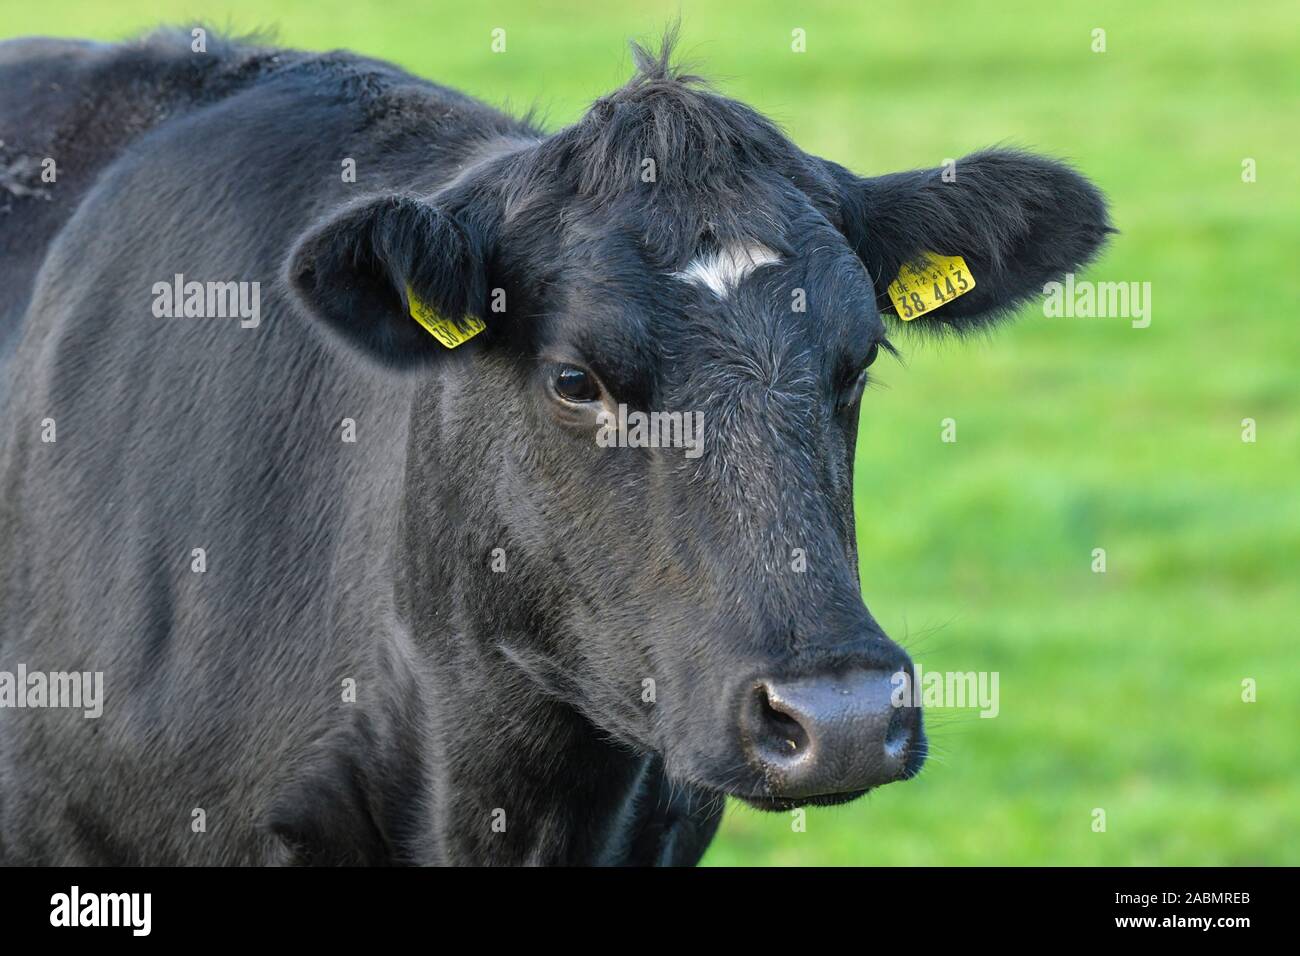 Kuh auf der Weide, Linum, Brandenburg, Deutschland Stock Photo